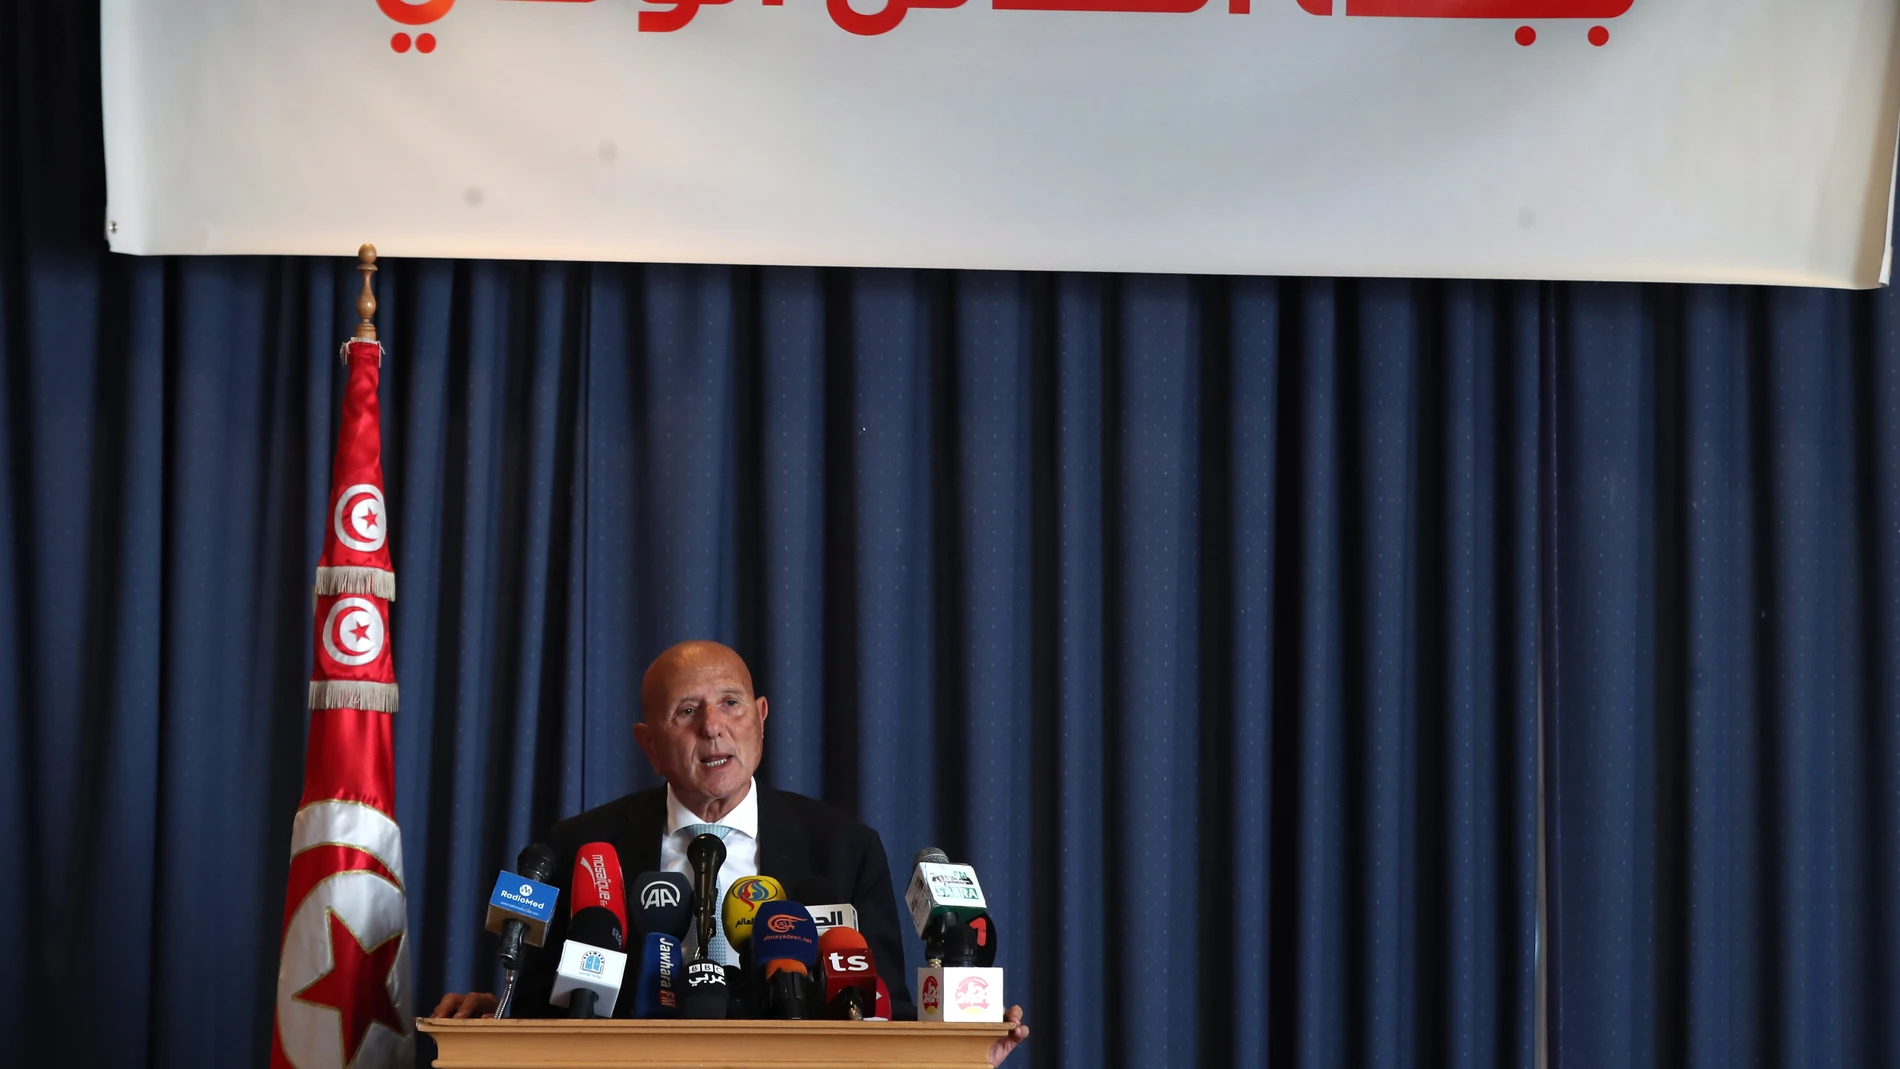 El presidente de Túnez gobierna por decreto desde hace casi un año, sin Parlamento